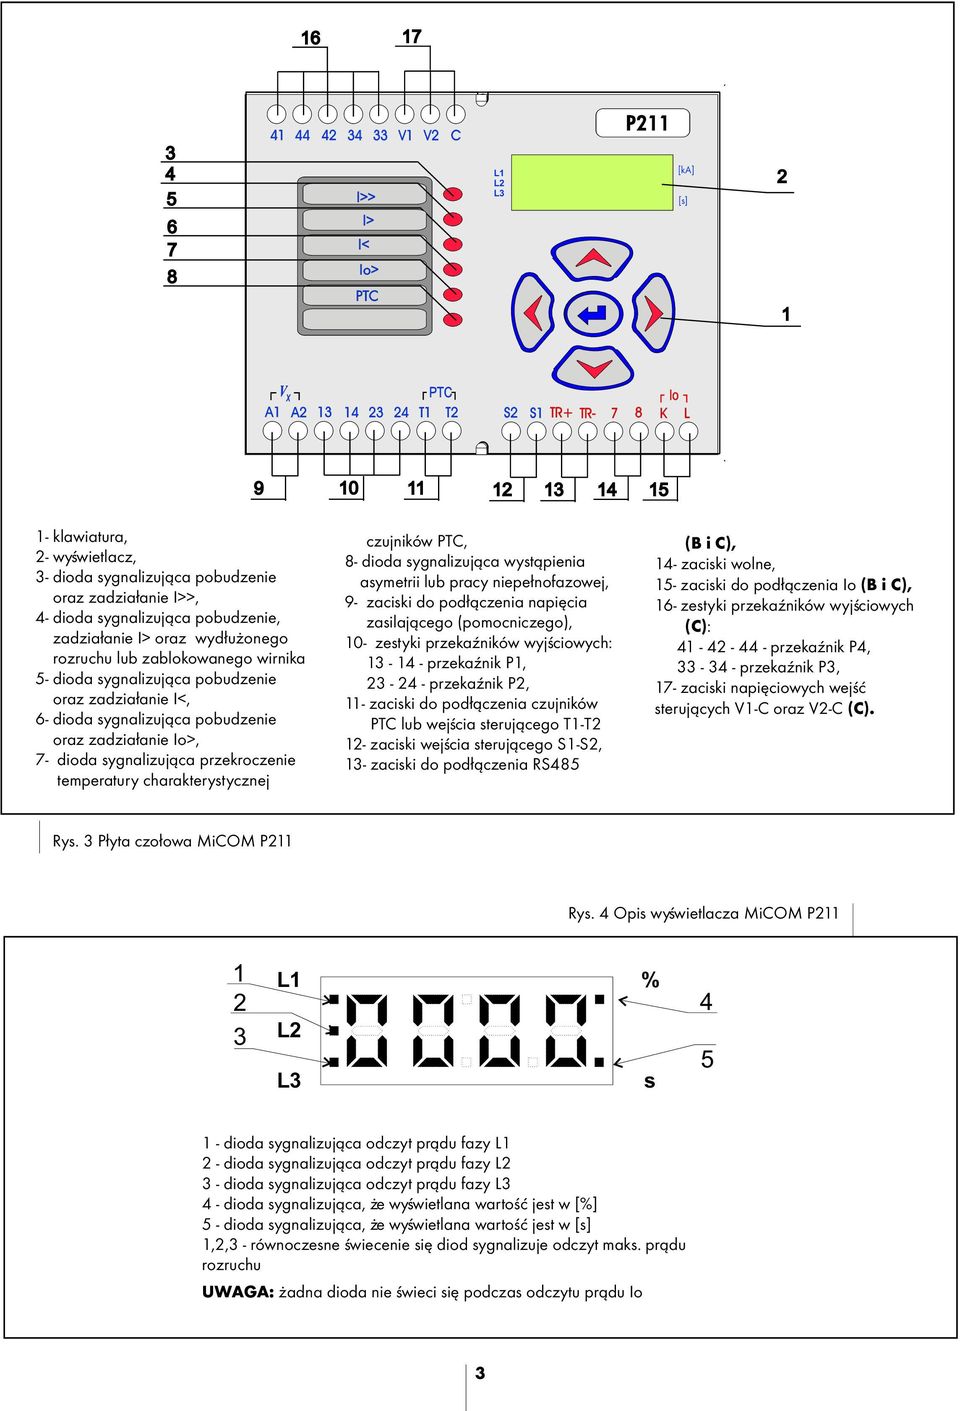 zadzia³anie I<, 6- dioda sygnalizuj¹ca pobudzenie oraz zadzia³anie Io>, 7- dioda sygnalizuj¹ca przekroczenie temperatury charakterystycznej czujników PTC, 8- dioda sygnalizuj¹ca wyst¹pienia asymetrii